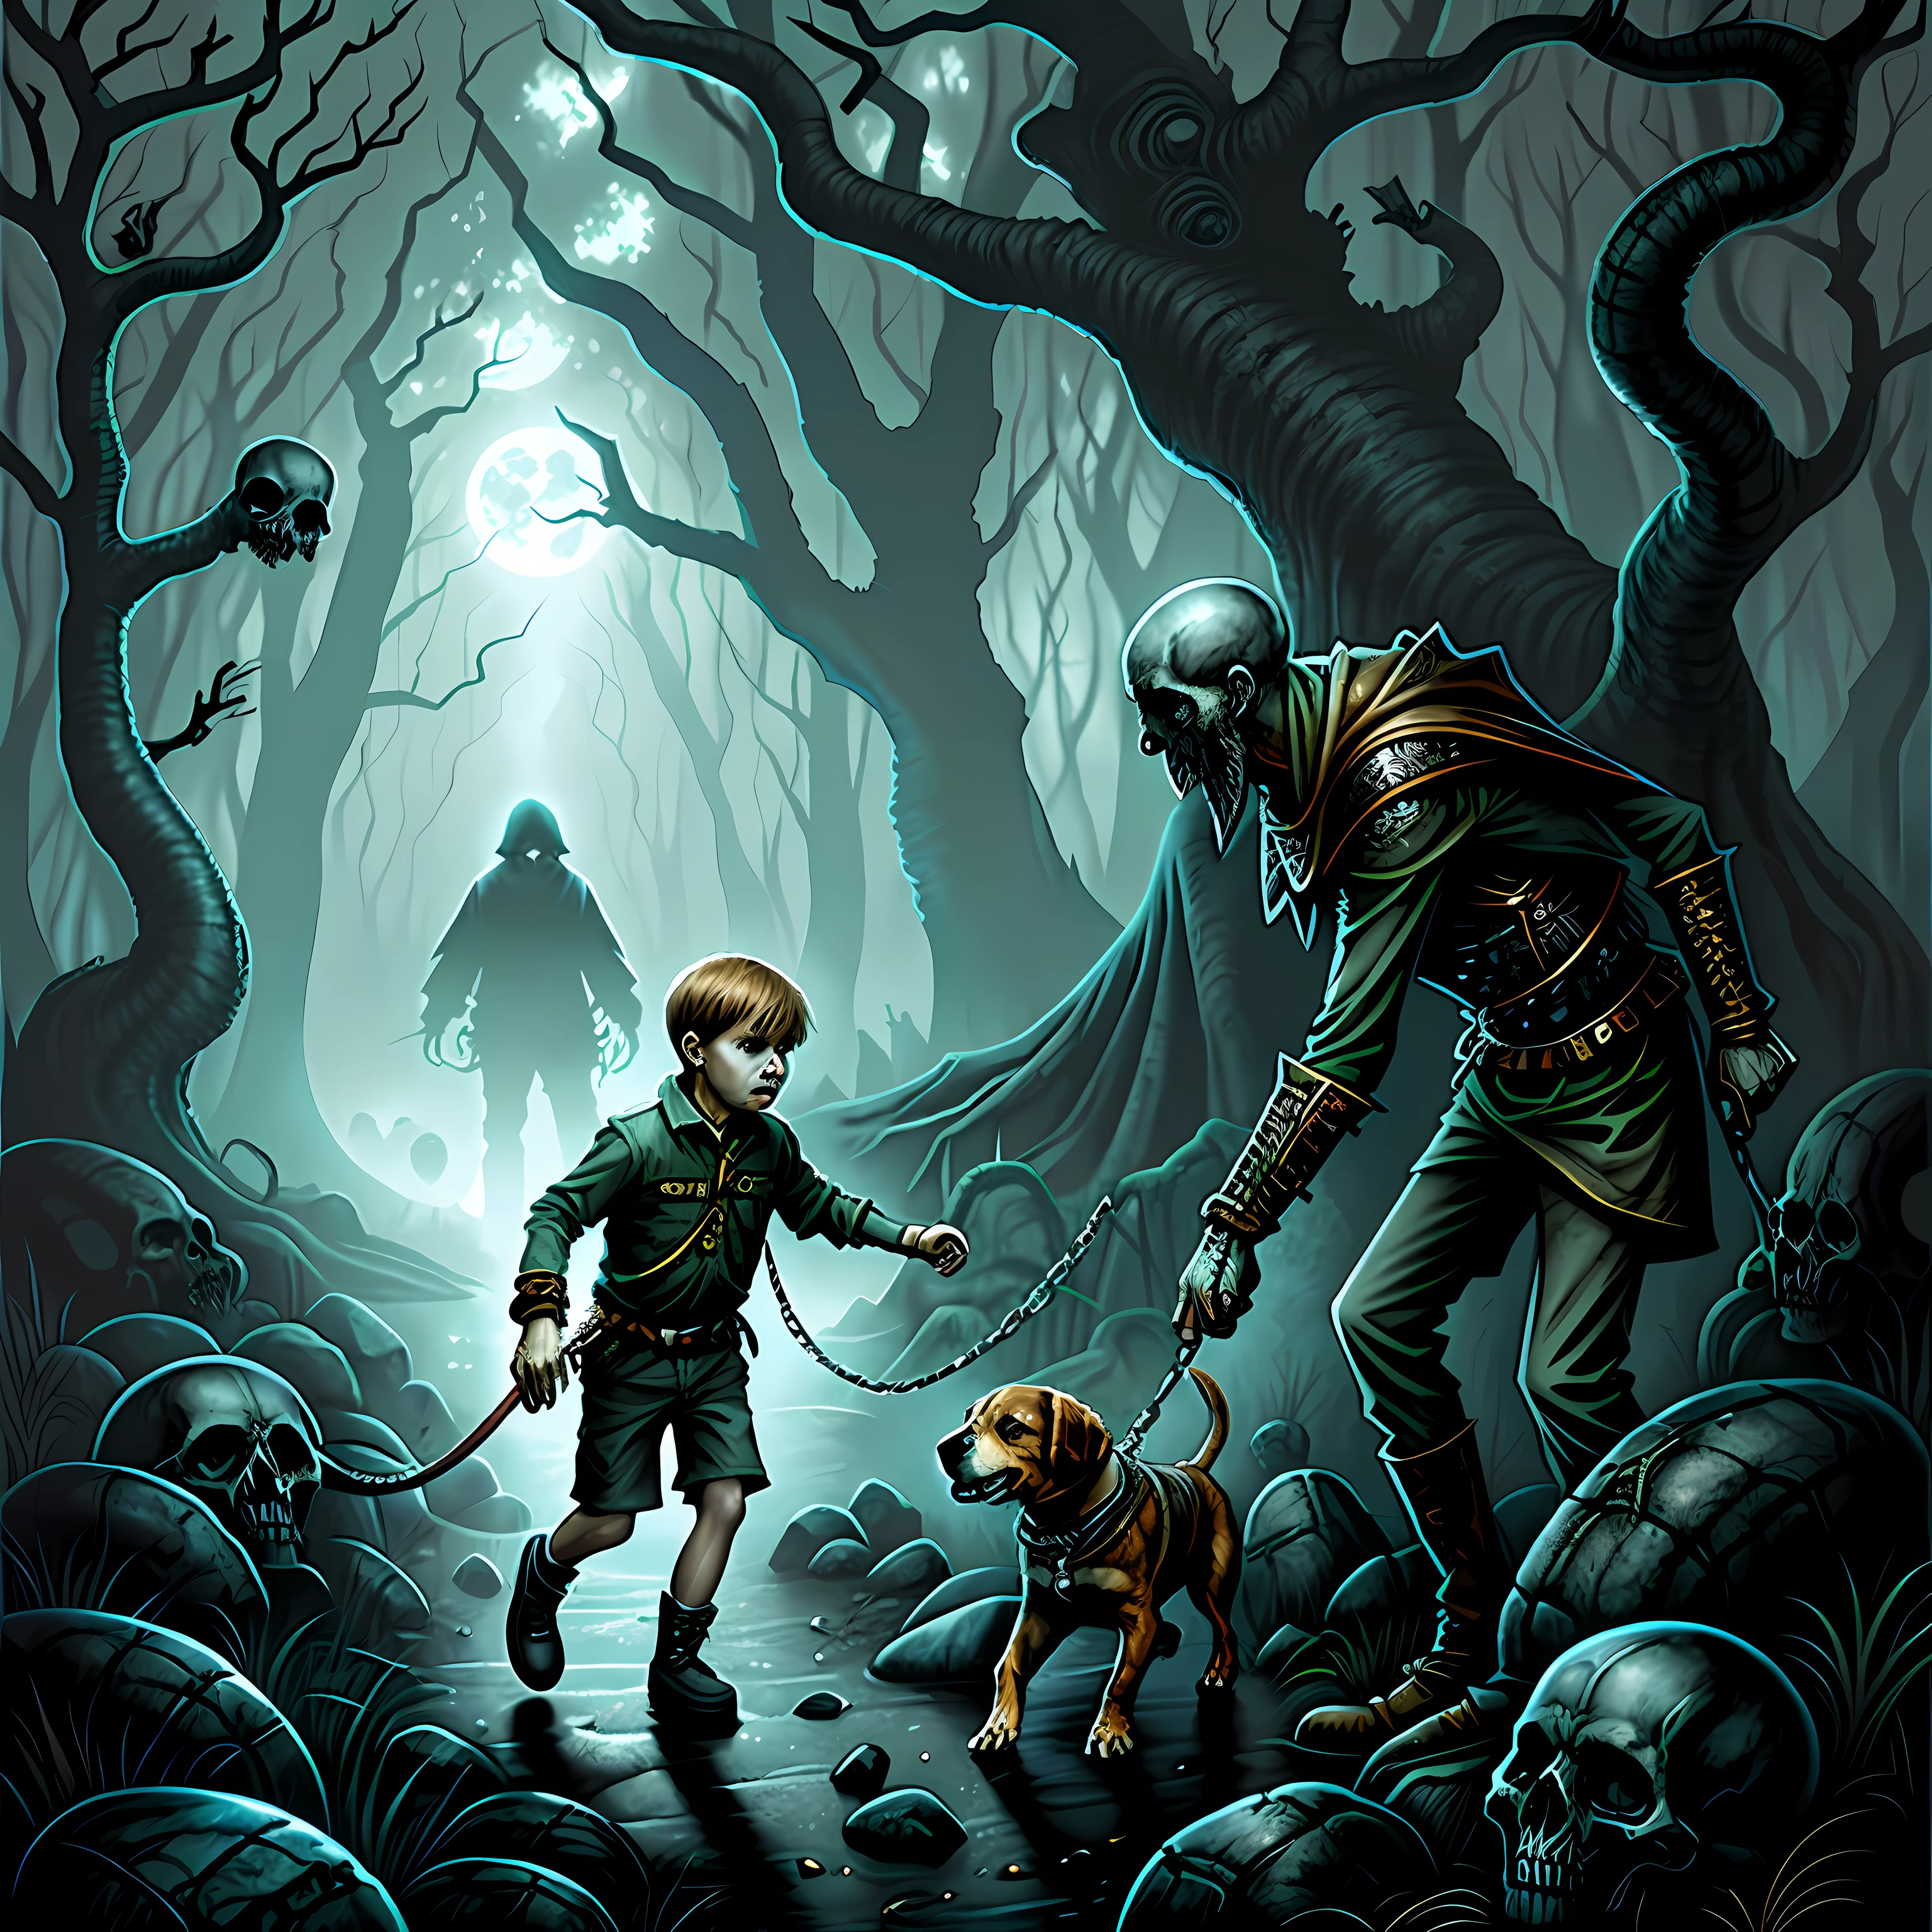 Мальчик с биглем на поводке пересекает лес, наполненный черепами и духами.. Искусство ужасов, сюрреализм , гипердетализированный, цветной рисунок, Иллюстрация Дэна Сигрейва.